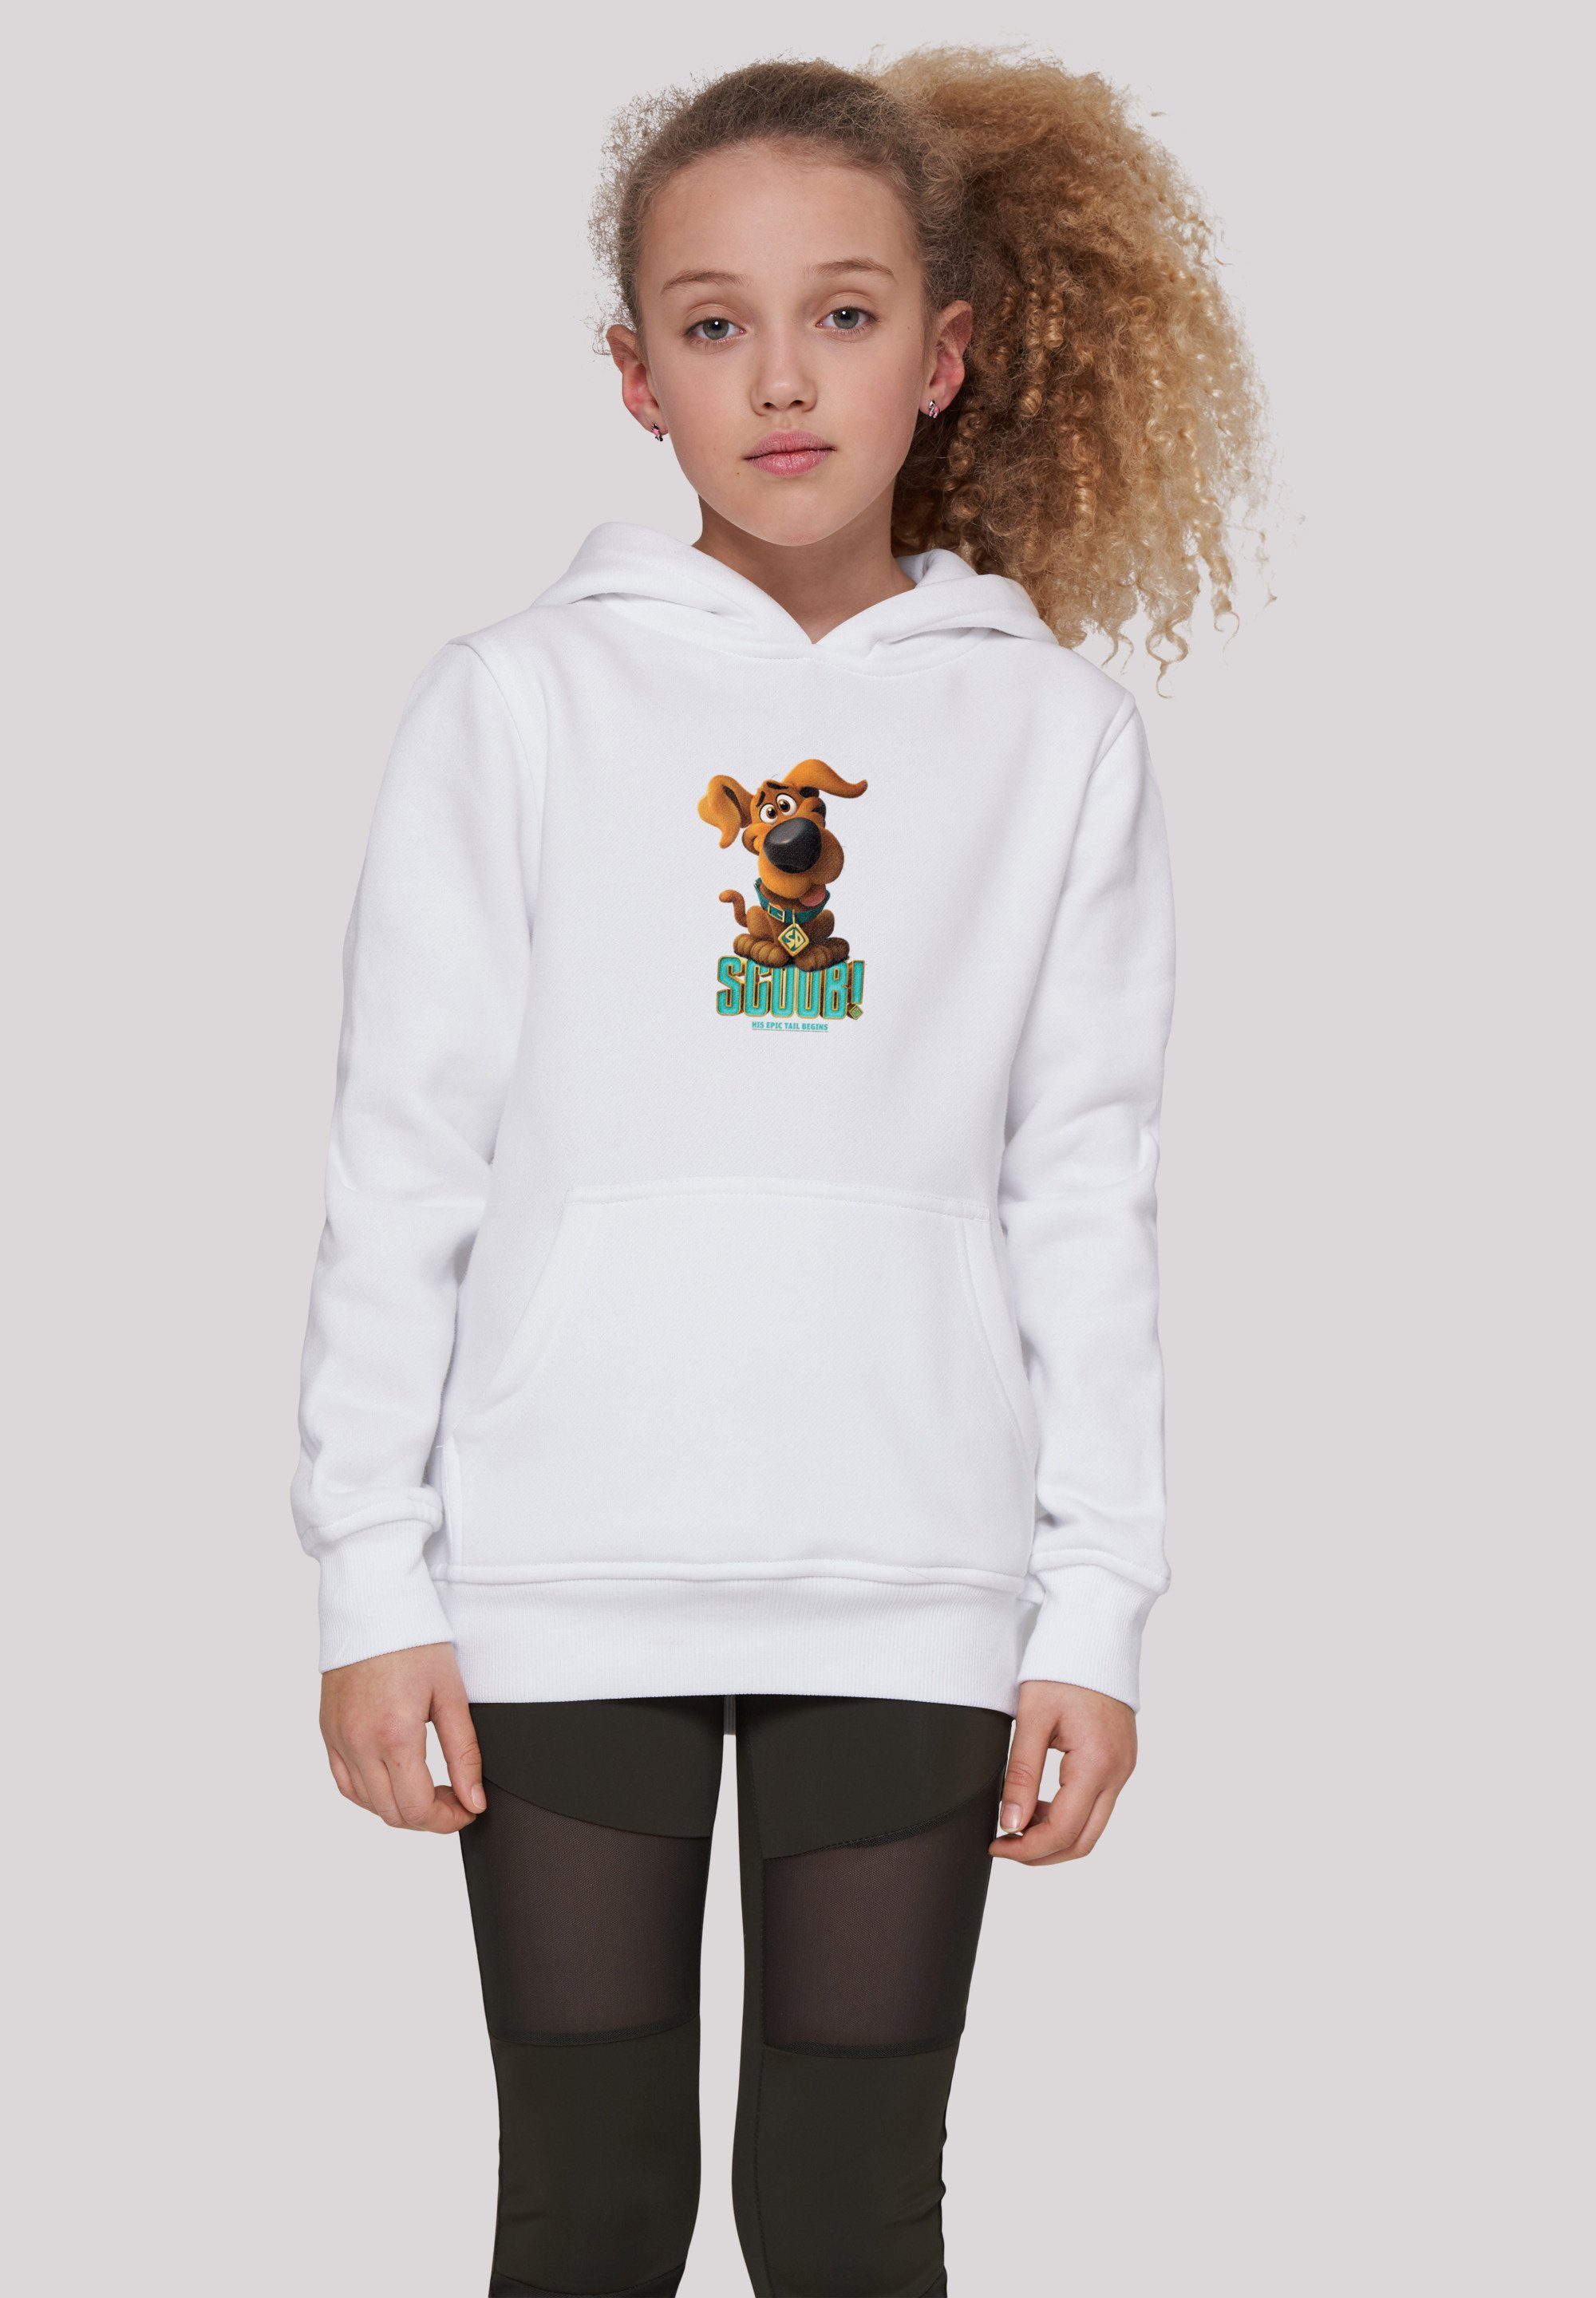 F4NT4STIC Sweatshirt Scooby Doo Puppy Scooby Unisex Kinder,Premium Merch,Jungen,Mädchen,Bedruckt weiß